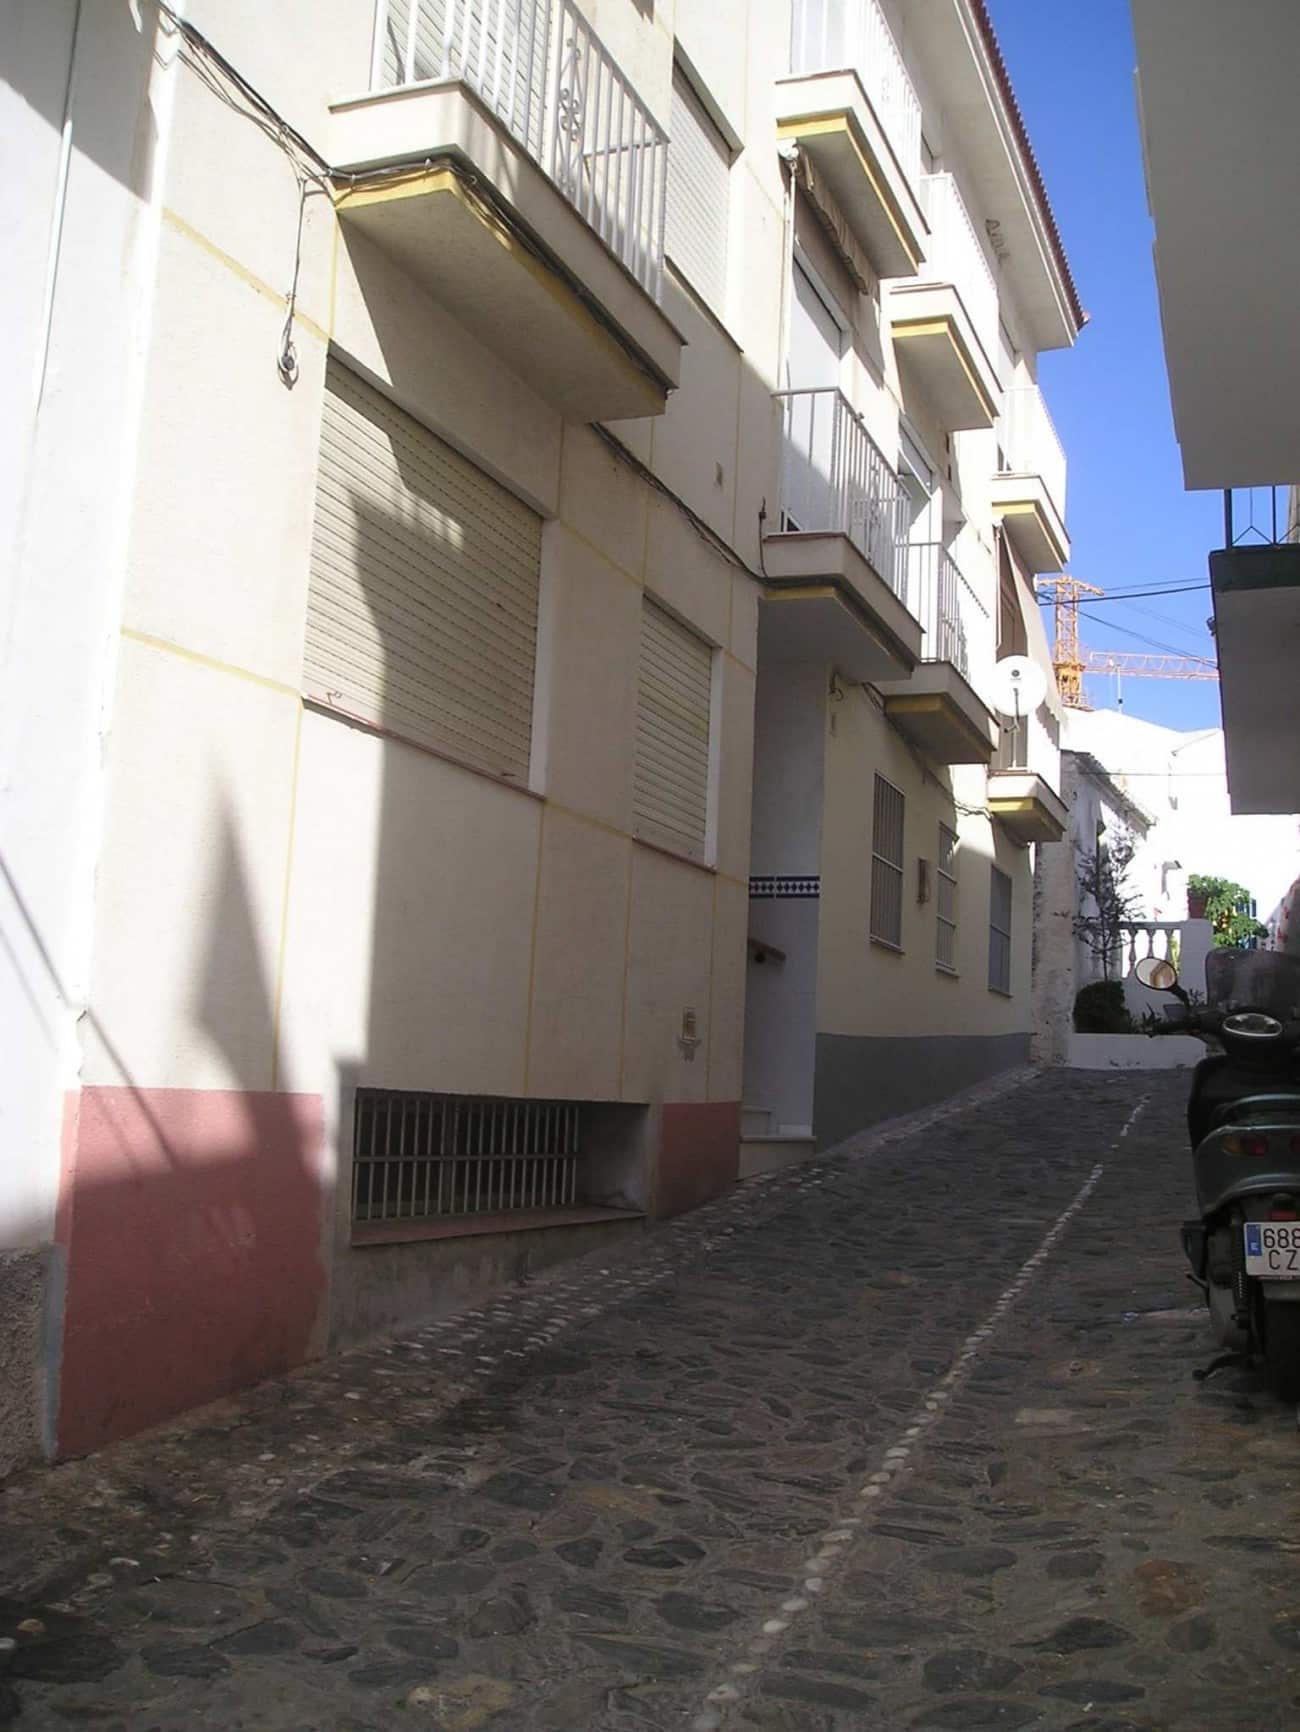 Vooraanzicht van resale appartement in La Herradura (04649) in Spanje, gelegen aan de  Costa de Almería